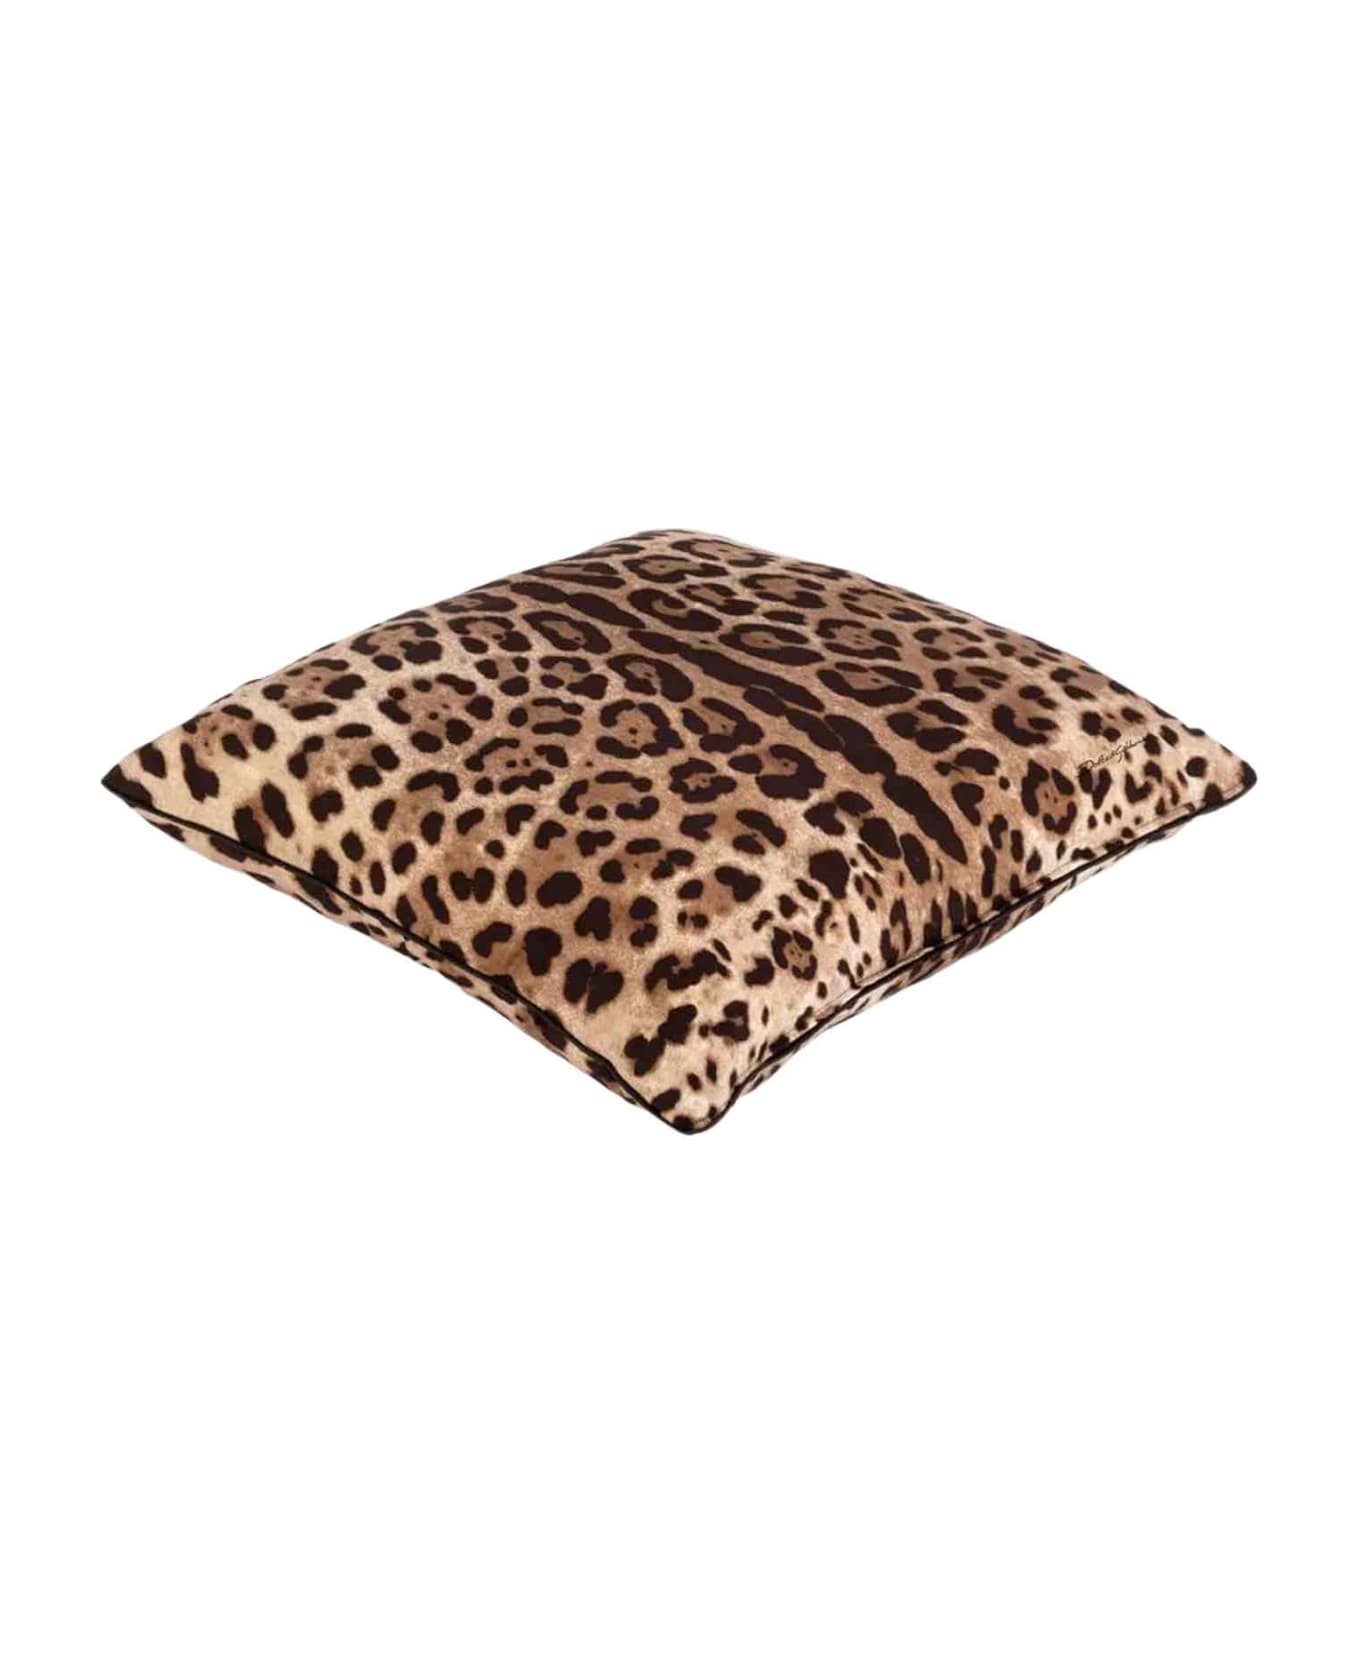 Dolce & Gabbana Brown Cushion - Leopardato